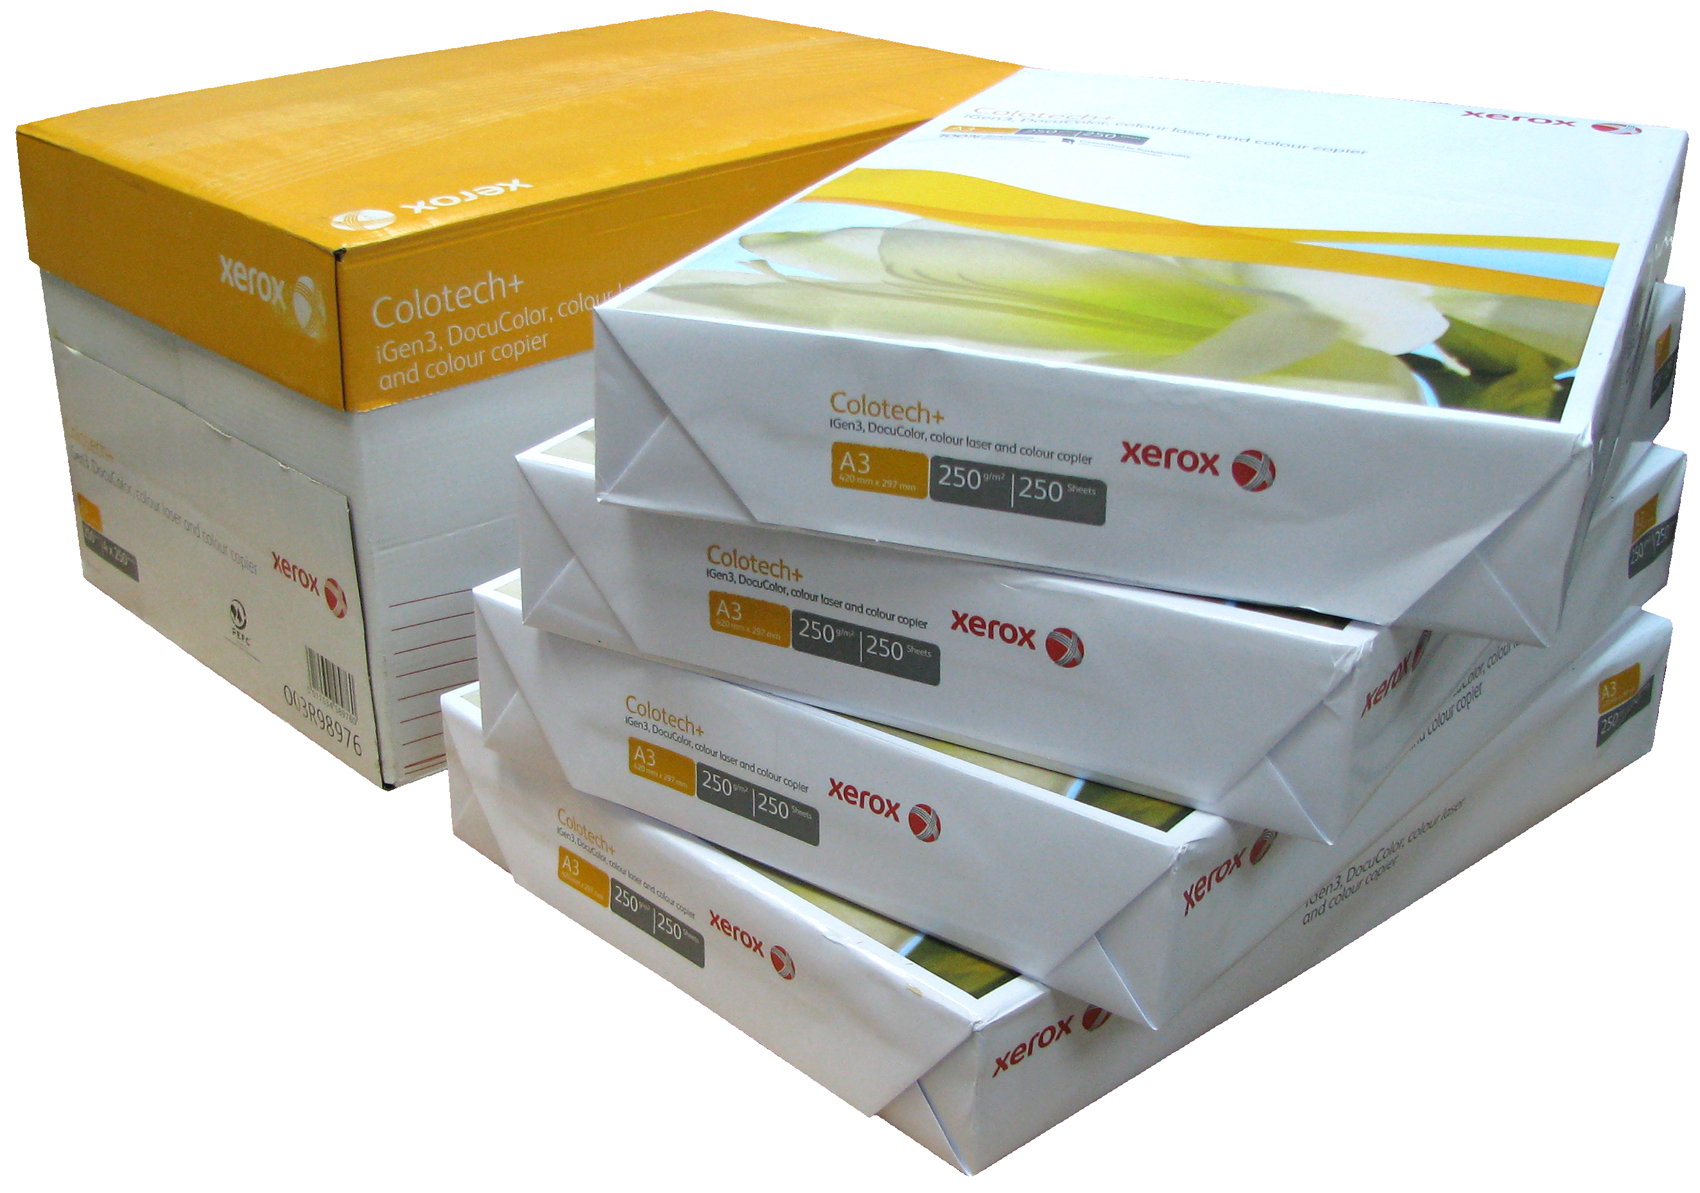 Продается офисная бумага разных торговых марок. Бумага Xerox 003r98917. Бумага Xerox Colotech+, a3, 250г/м2. Бумага Xerox (003r98927). Бумага Xerox 003r97599.